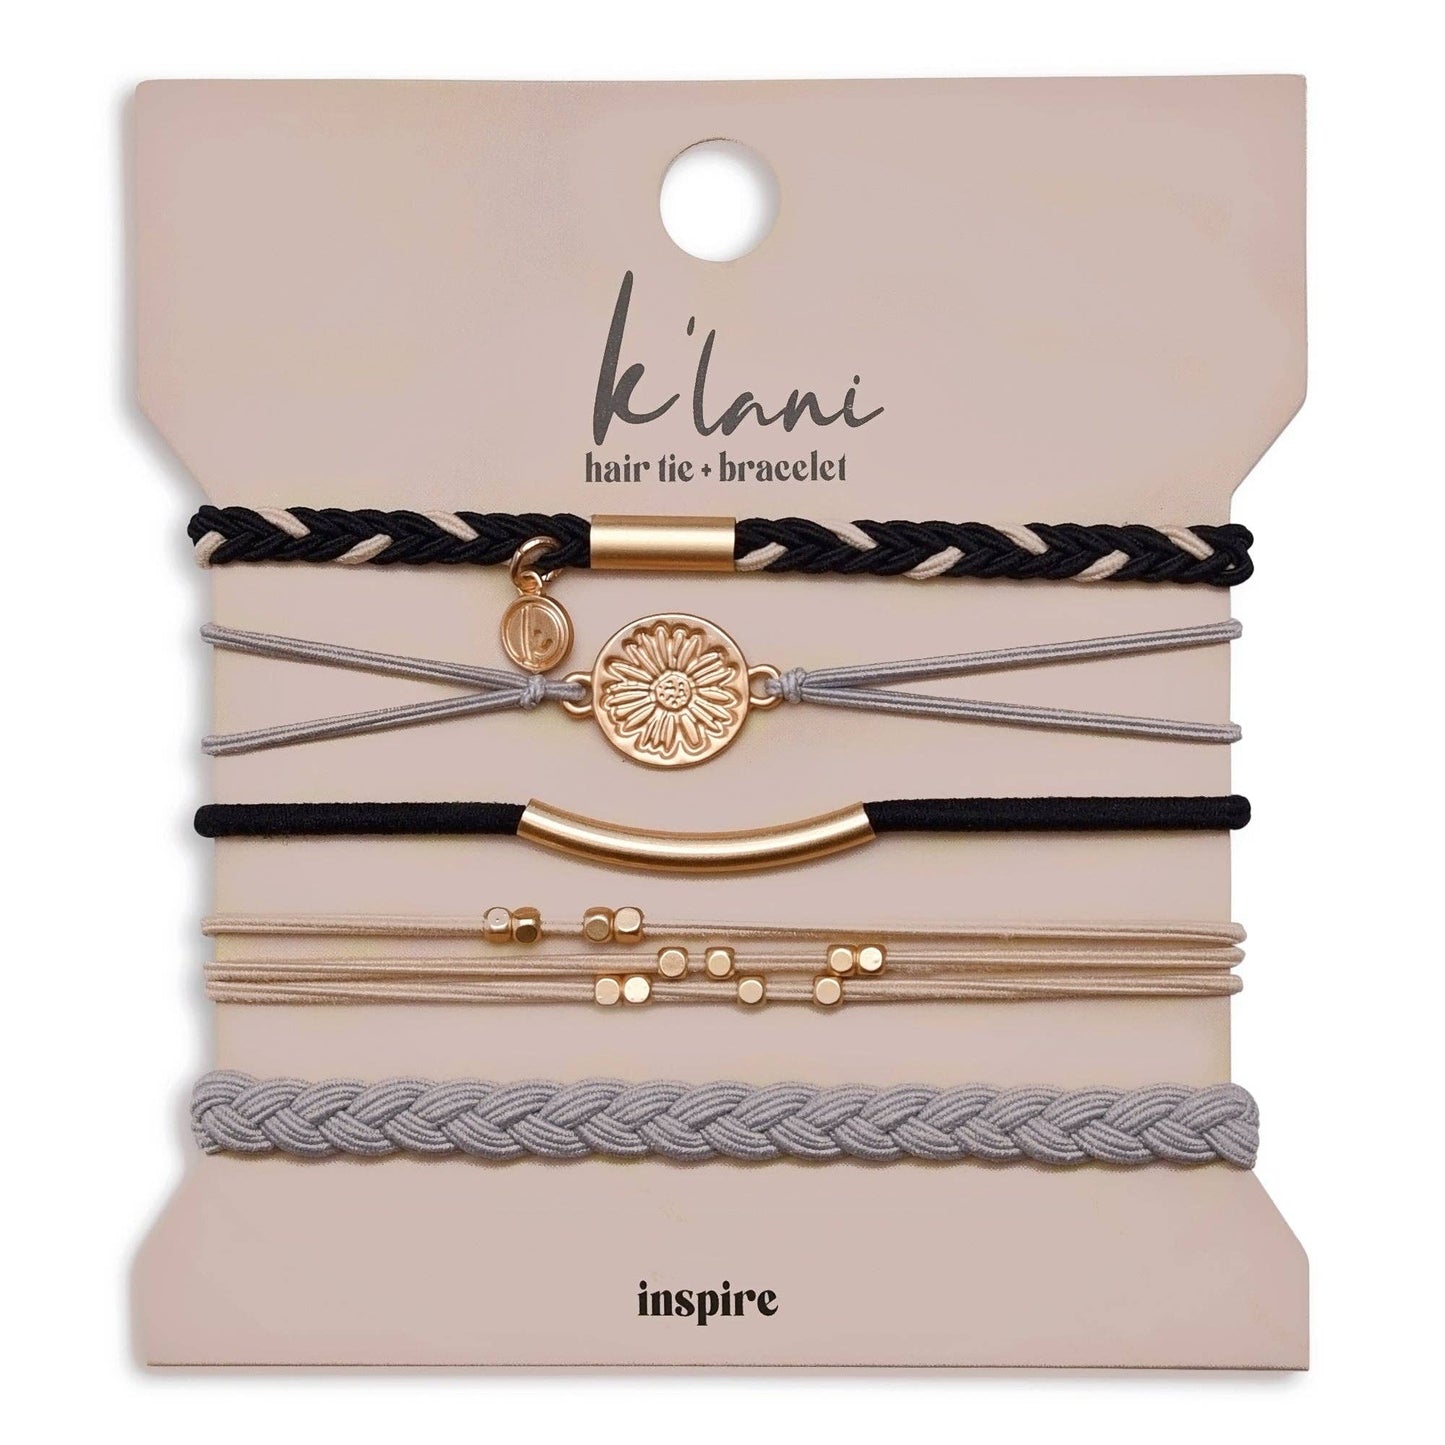 K'Lani Hair Tie Bracelets - Inspire